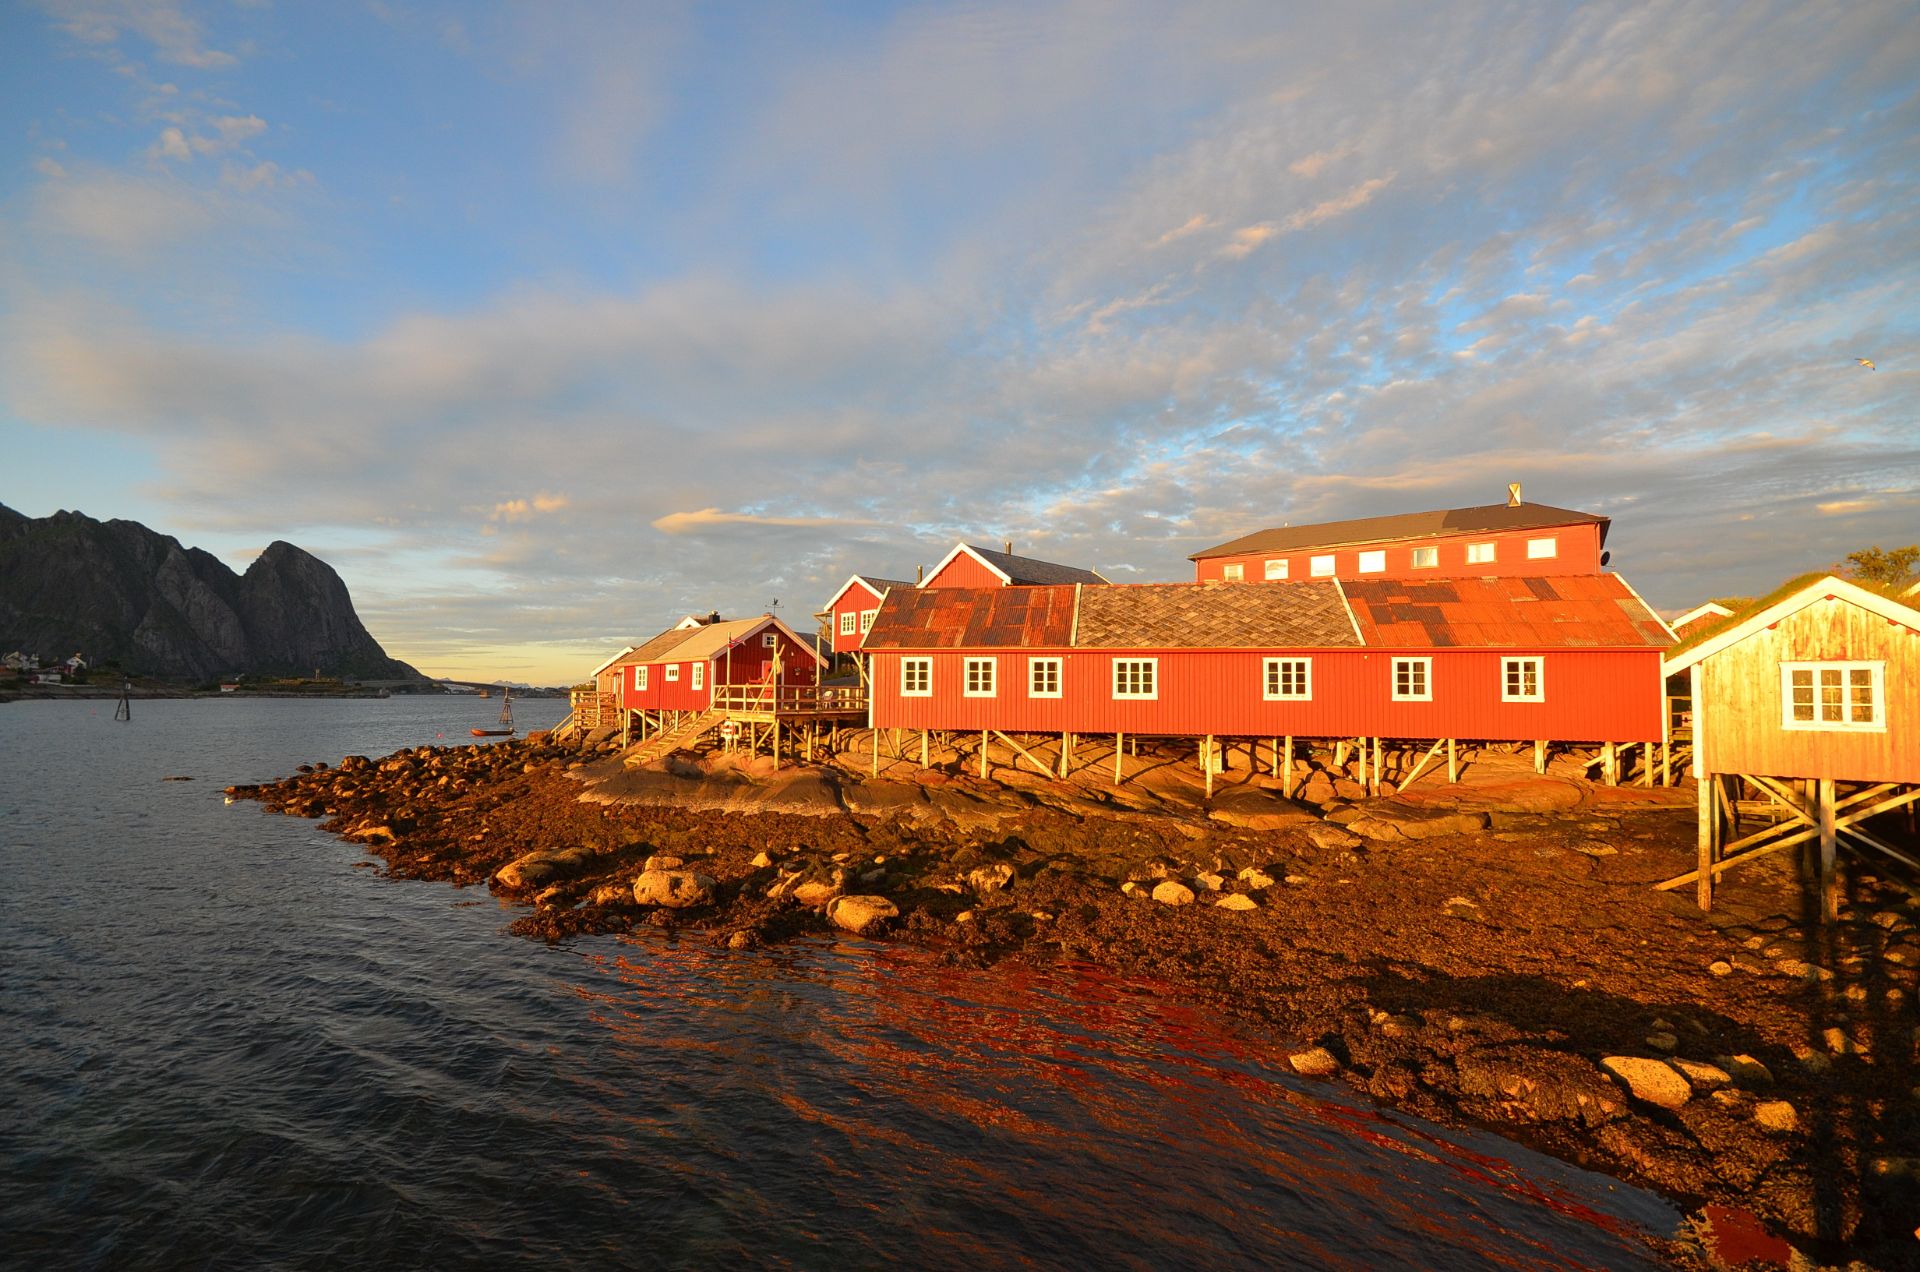 在挪威罗弗敦群岛雷讷小村的几天可能会是毕生难忘的旅行经历。很难描述刚到雷讷的时候是怎样一种复杂的内心